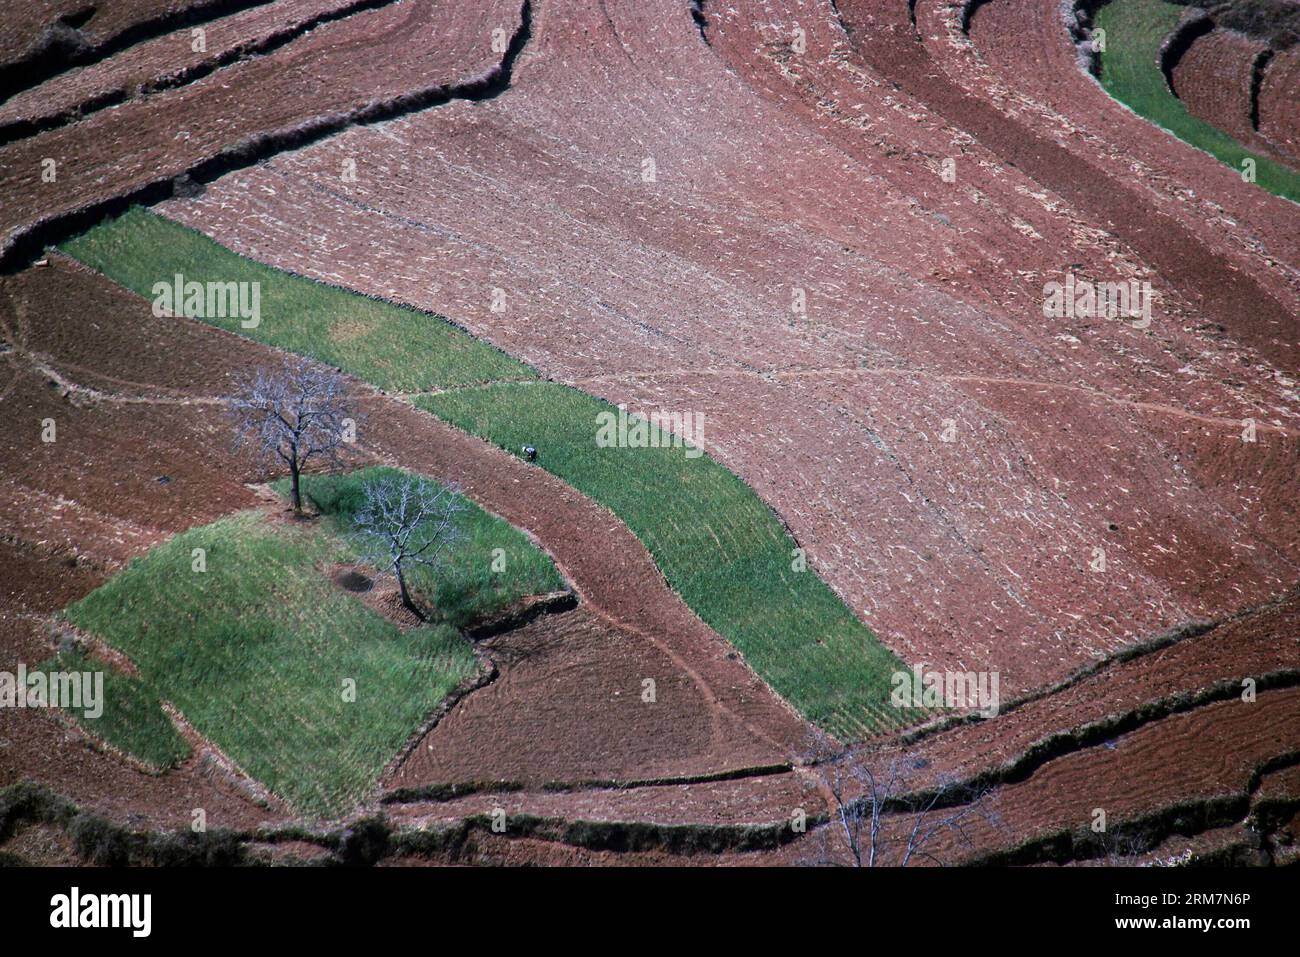 (140310) -- WEINING, March 10, 2014 (Xinhua) -- Photo taken on March 9, 2014 shows the field scenery in Haila Township of Weining Yi Autonomous County, southwest China s Guizhou Province. (Xinhua/He Huan) (lfj) CHINA-GUIZHOU-WEINING-SCENERY (CN) PUBLICATIONxNOTxINxCHN   Weining March 10 2014 XINHUA Photo Taken ON March 9 2014 Shows The Field scenery in  Township of Weining Yi Autonomous County Southwest China S Guizhou Province XINHUA he Huan  China Guizhou Weining scenery CN PUBLICATIONxNOTxINxCHN Stock Photo